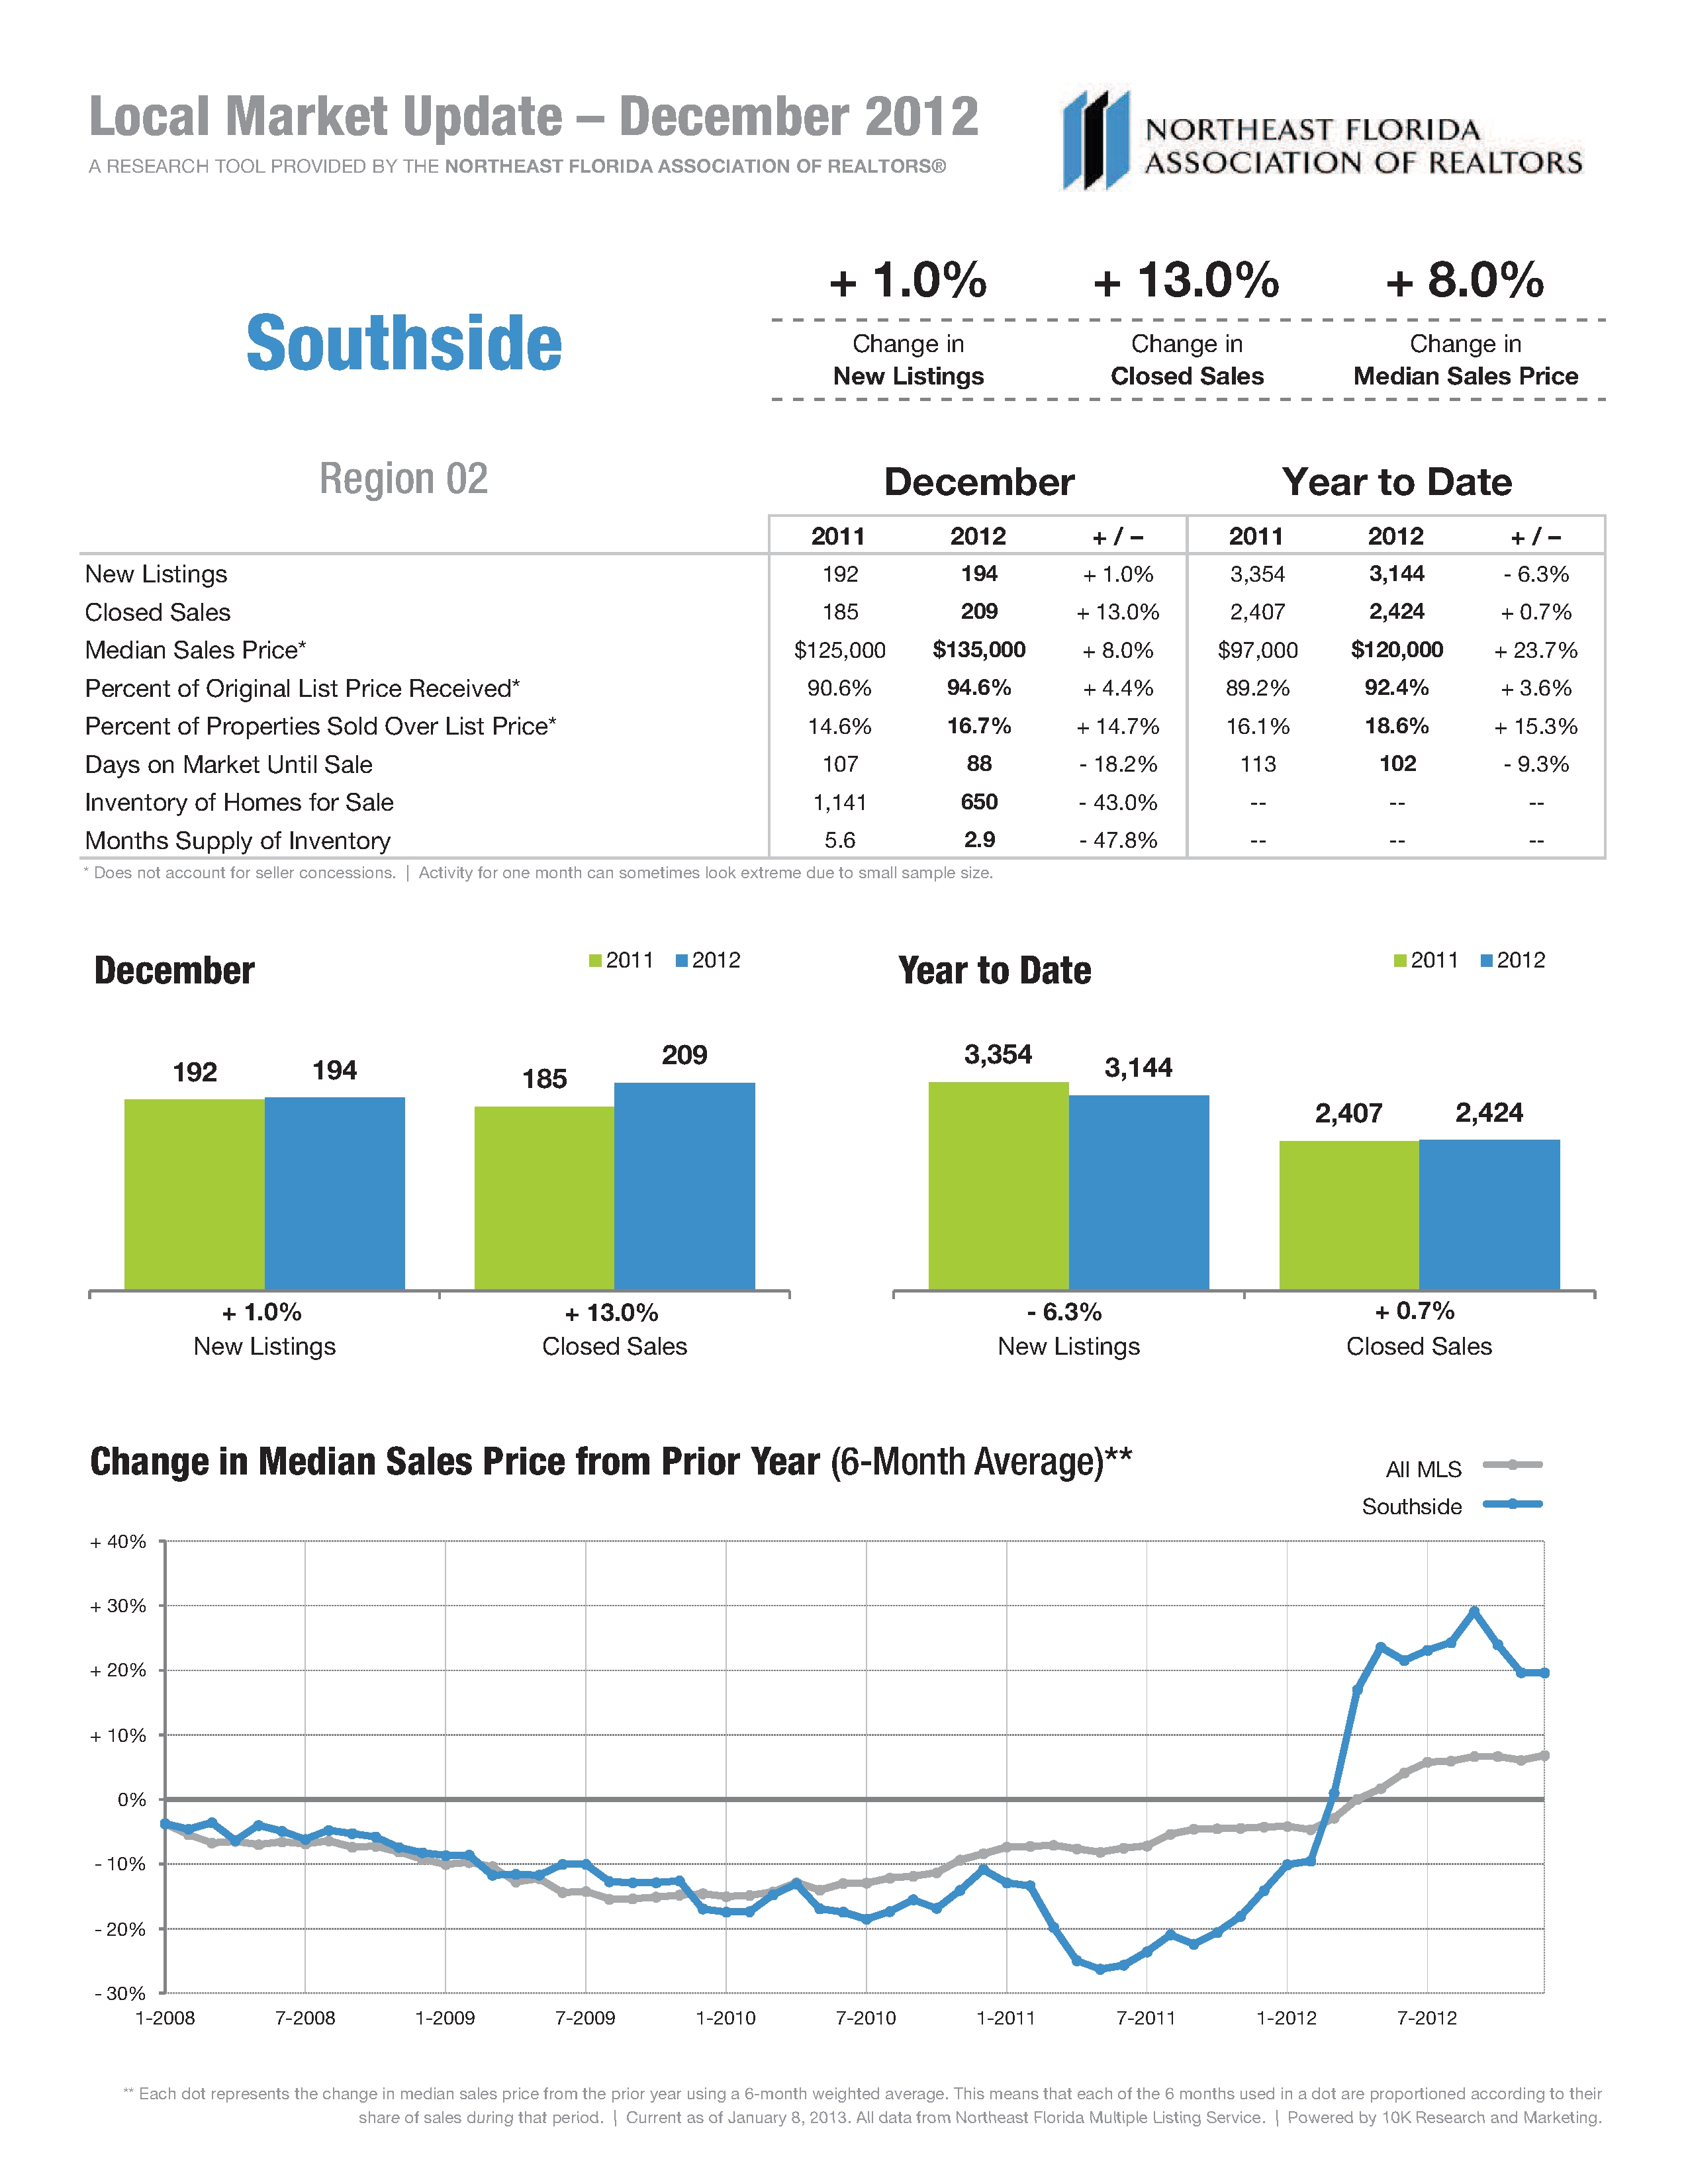 Real Estate Market Statistics for Southside ICW Dec 2012